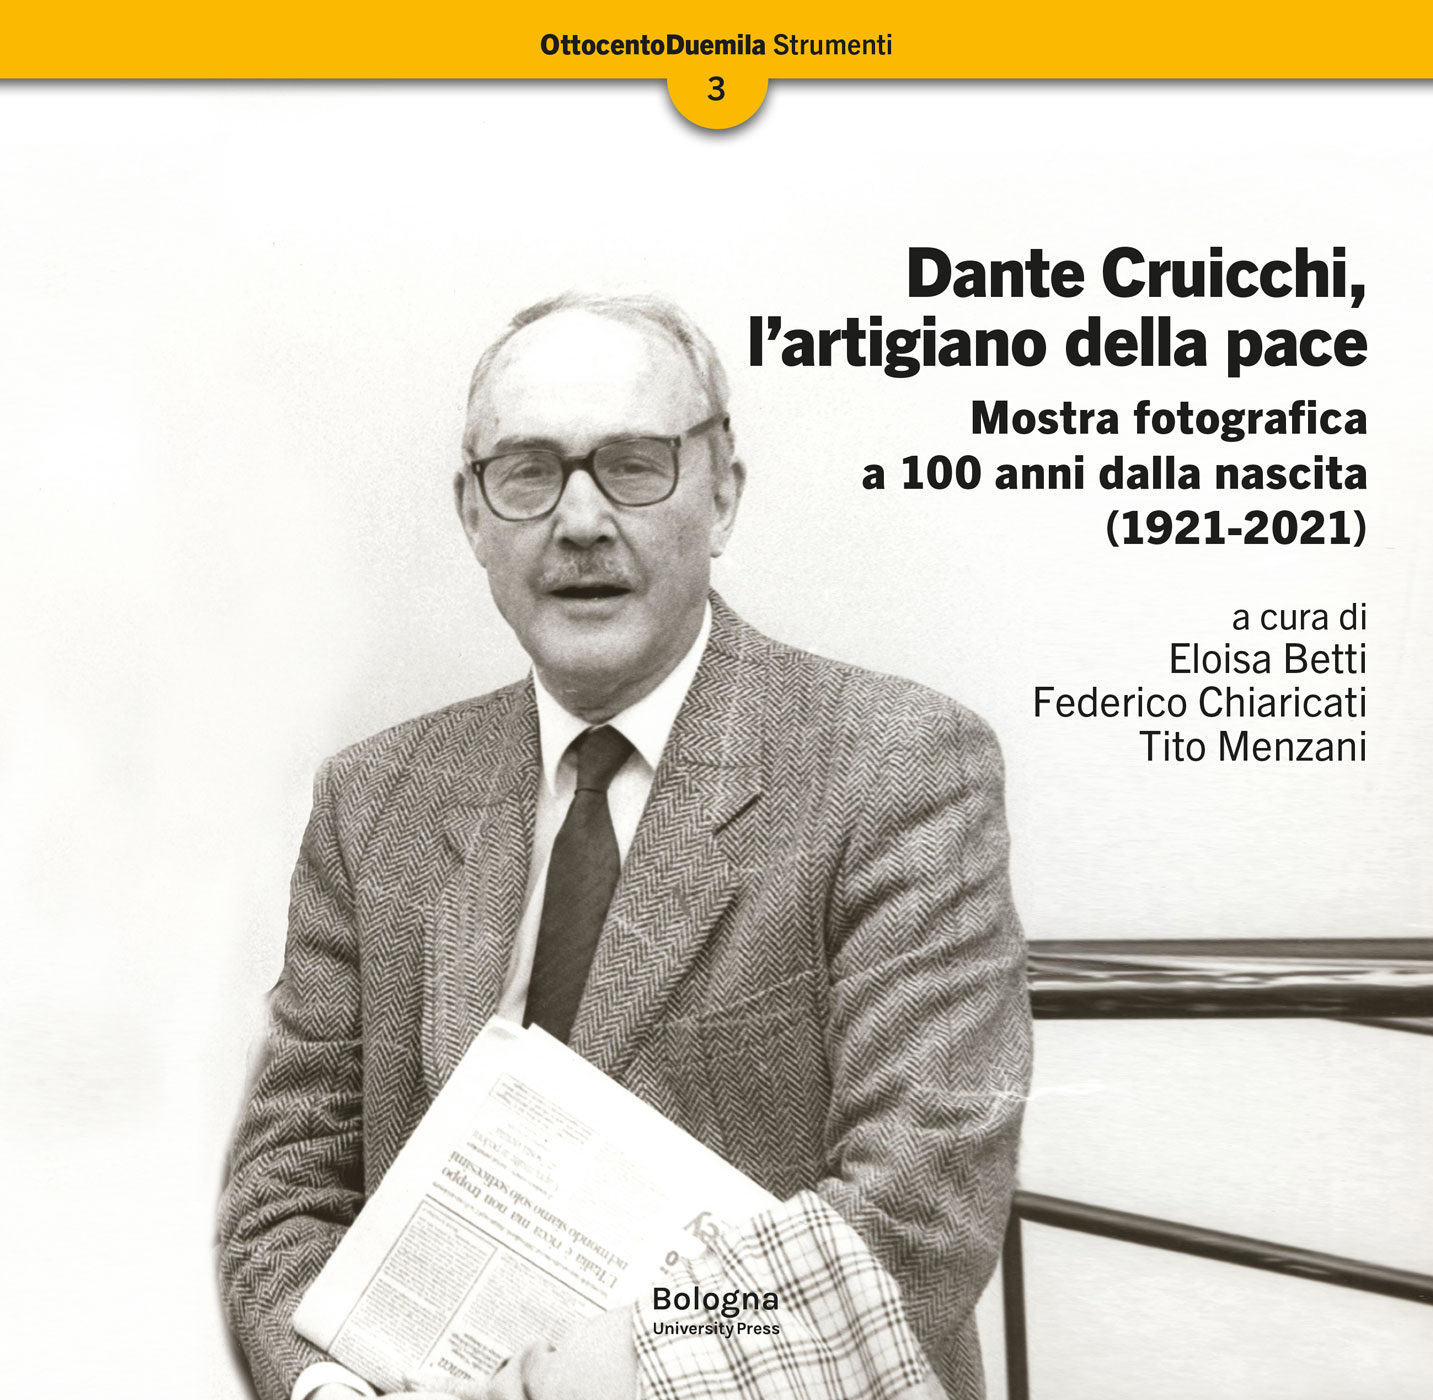 Dante Cruicchi, l’artigiano della pace - Bologna University Press